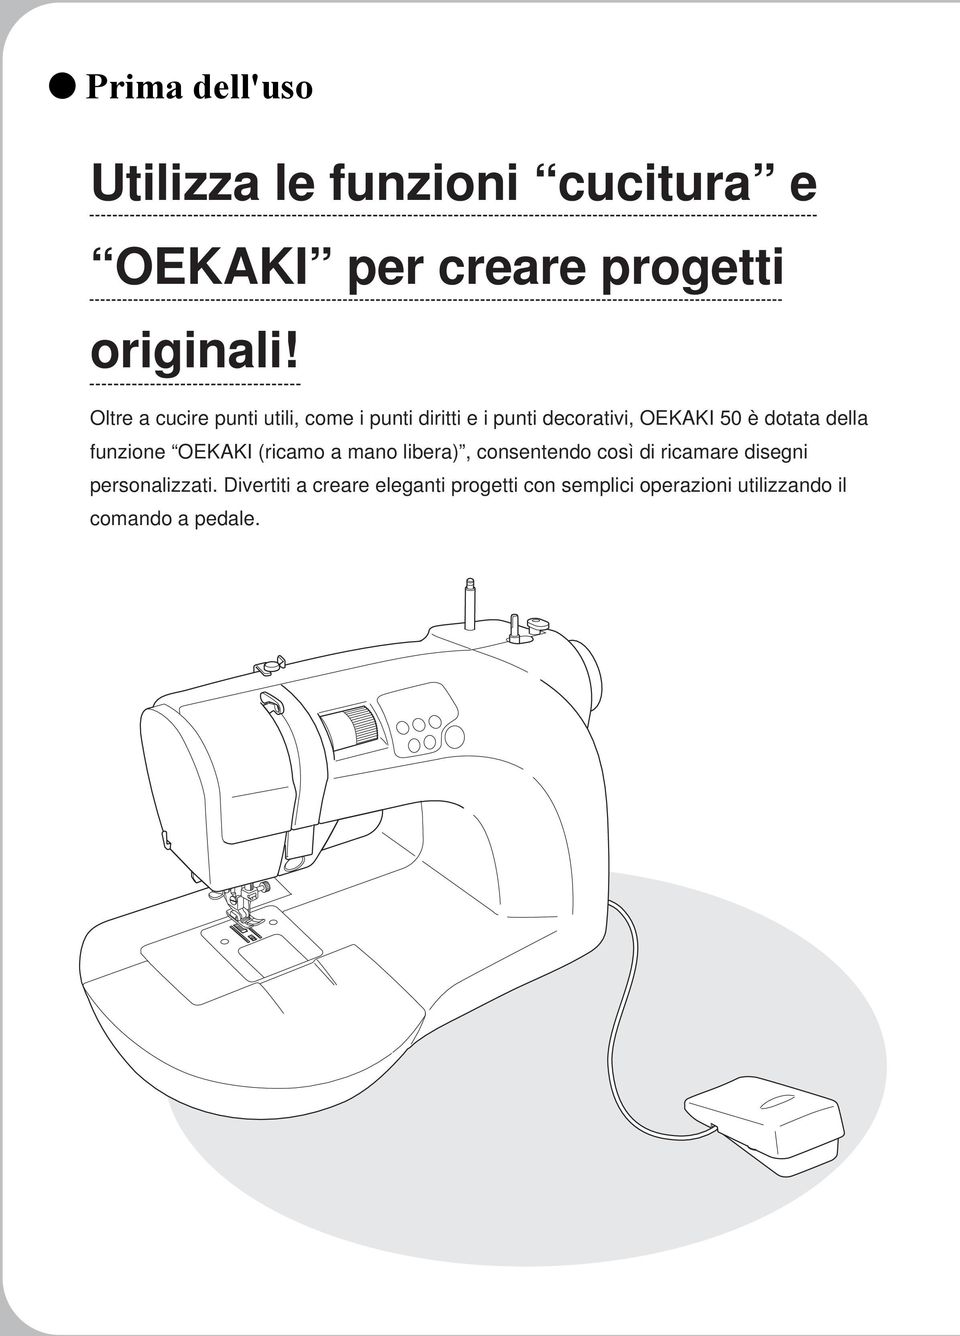 della funzione OEKAKI (ricamo a mano libera), consentendo così di ricamare disegni